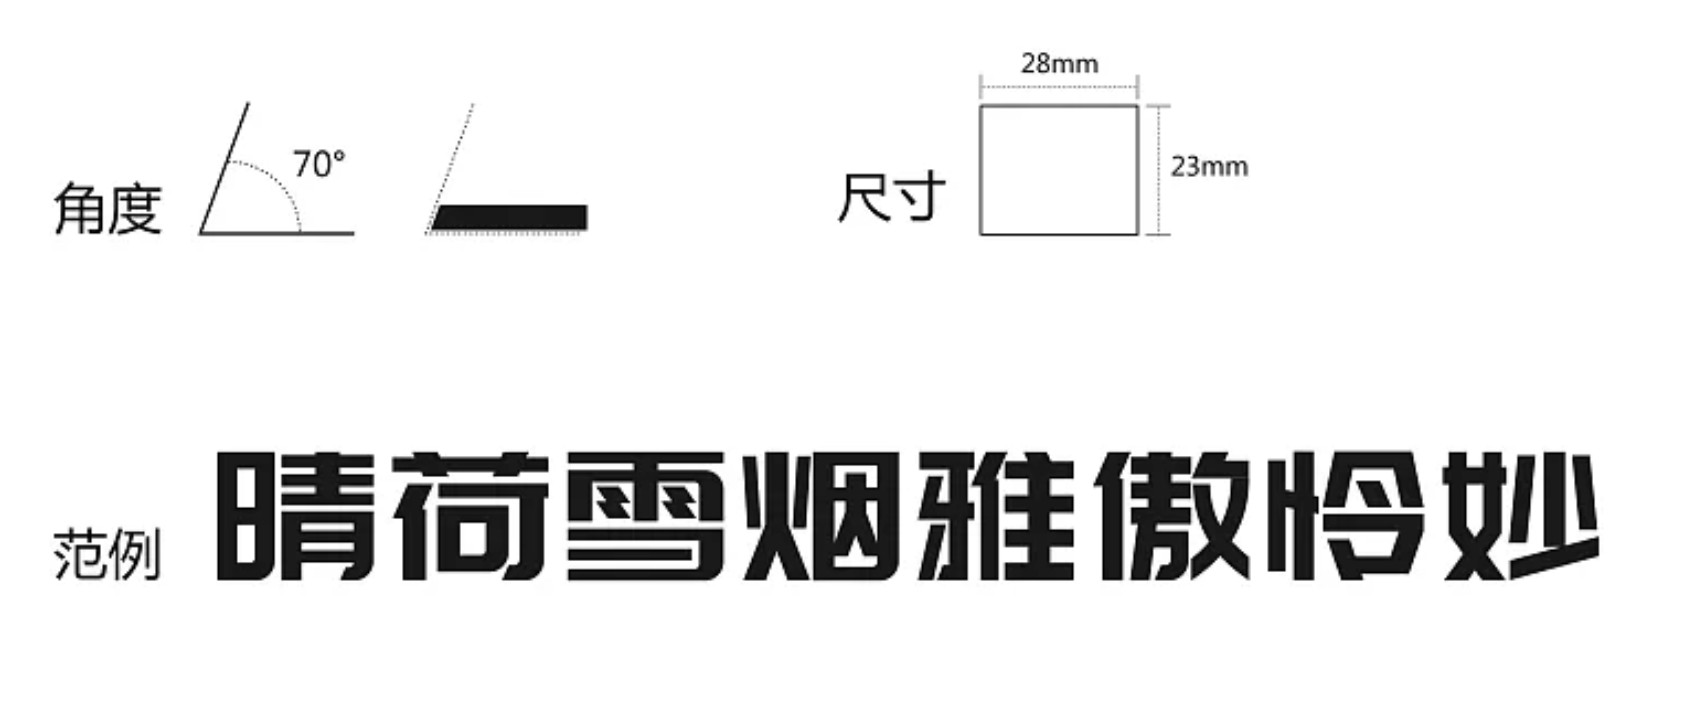 庞门正道标题体2.0 - 完全免费可商用中文字体！